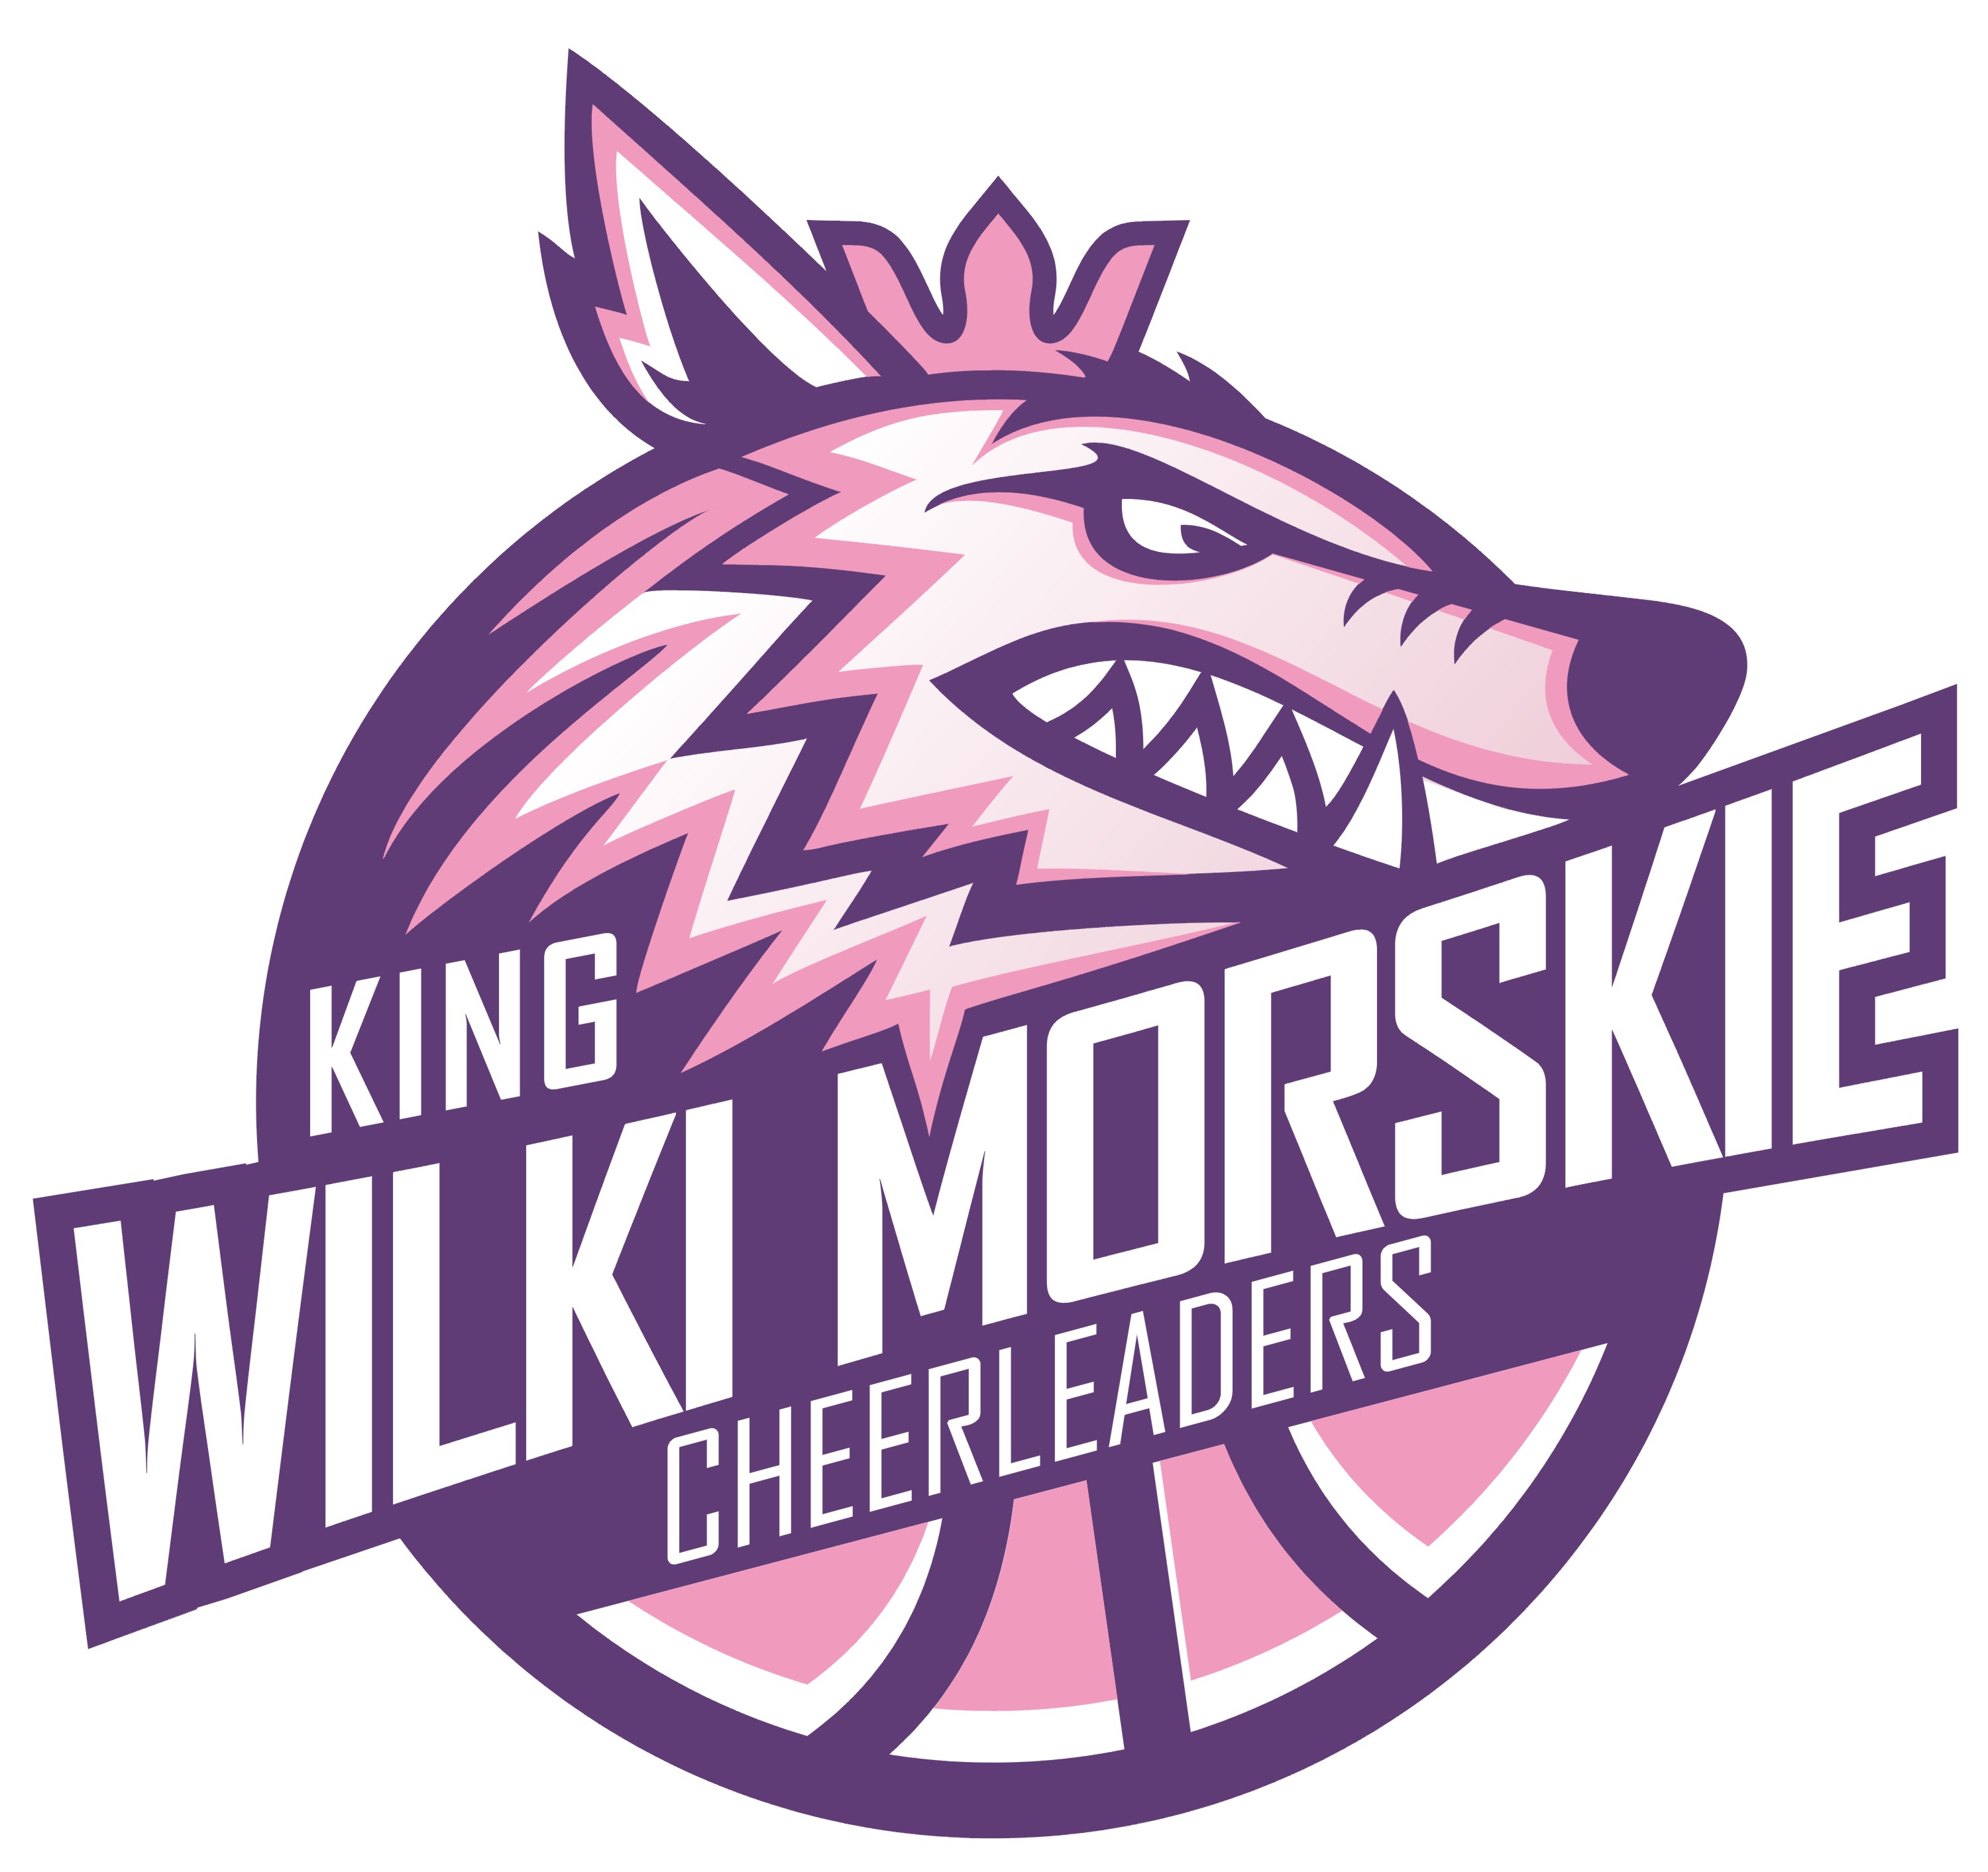 King Wilki Morskie Szczecin Cheerleaders